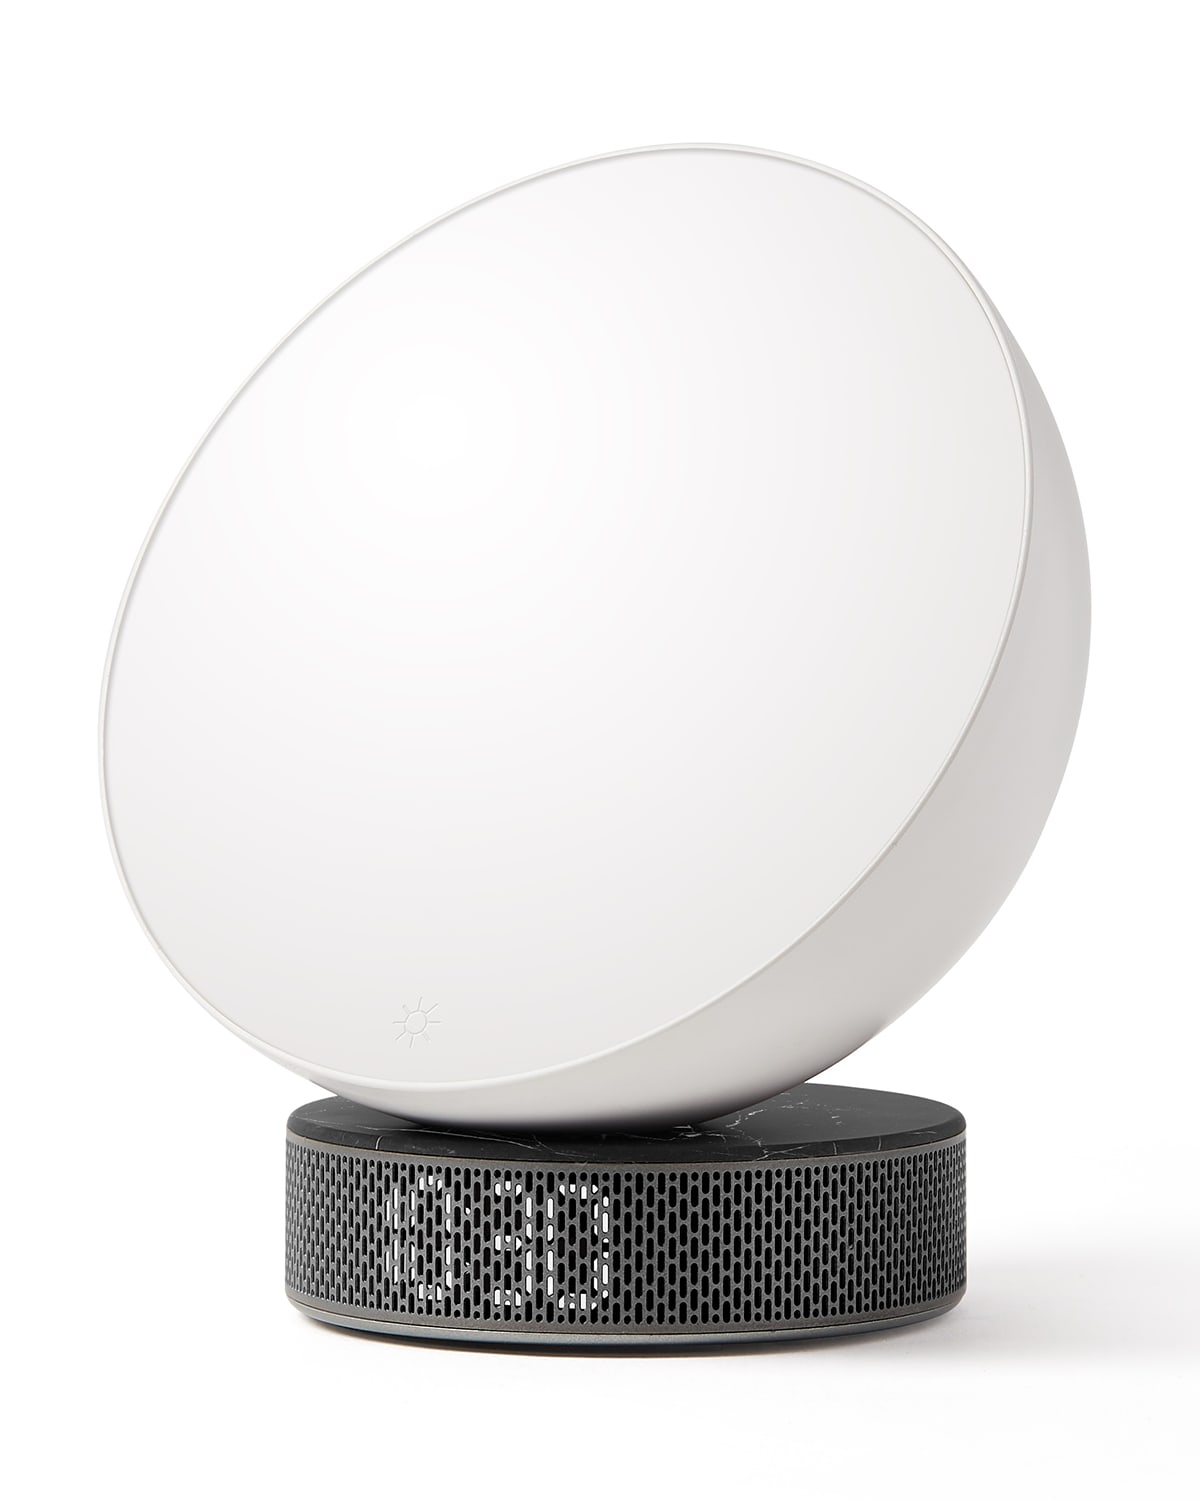 Lexon Design Miami Sunrise Simulator Light Alarm Clock